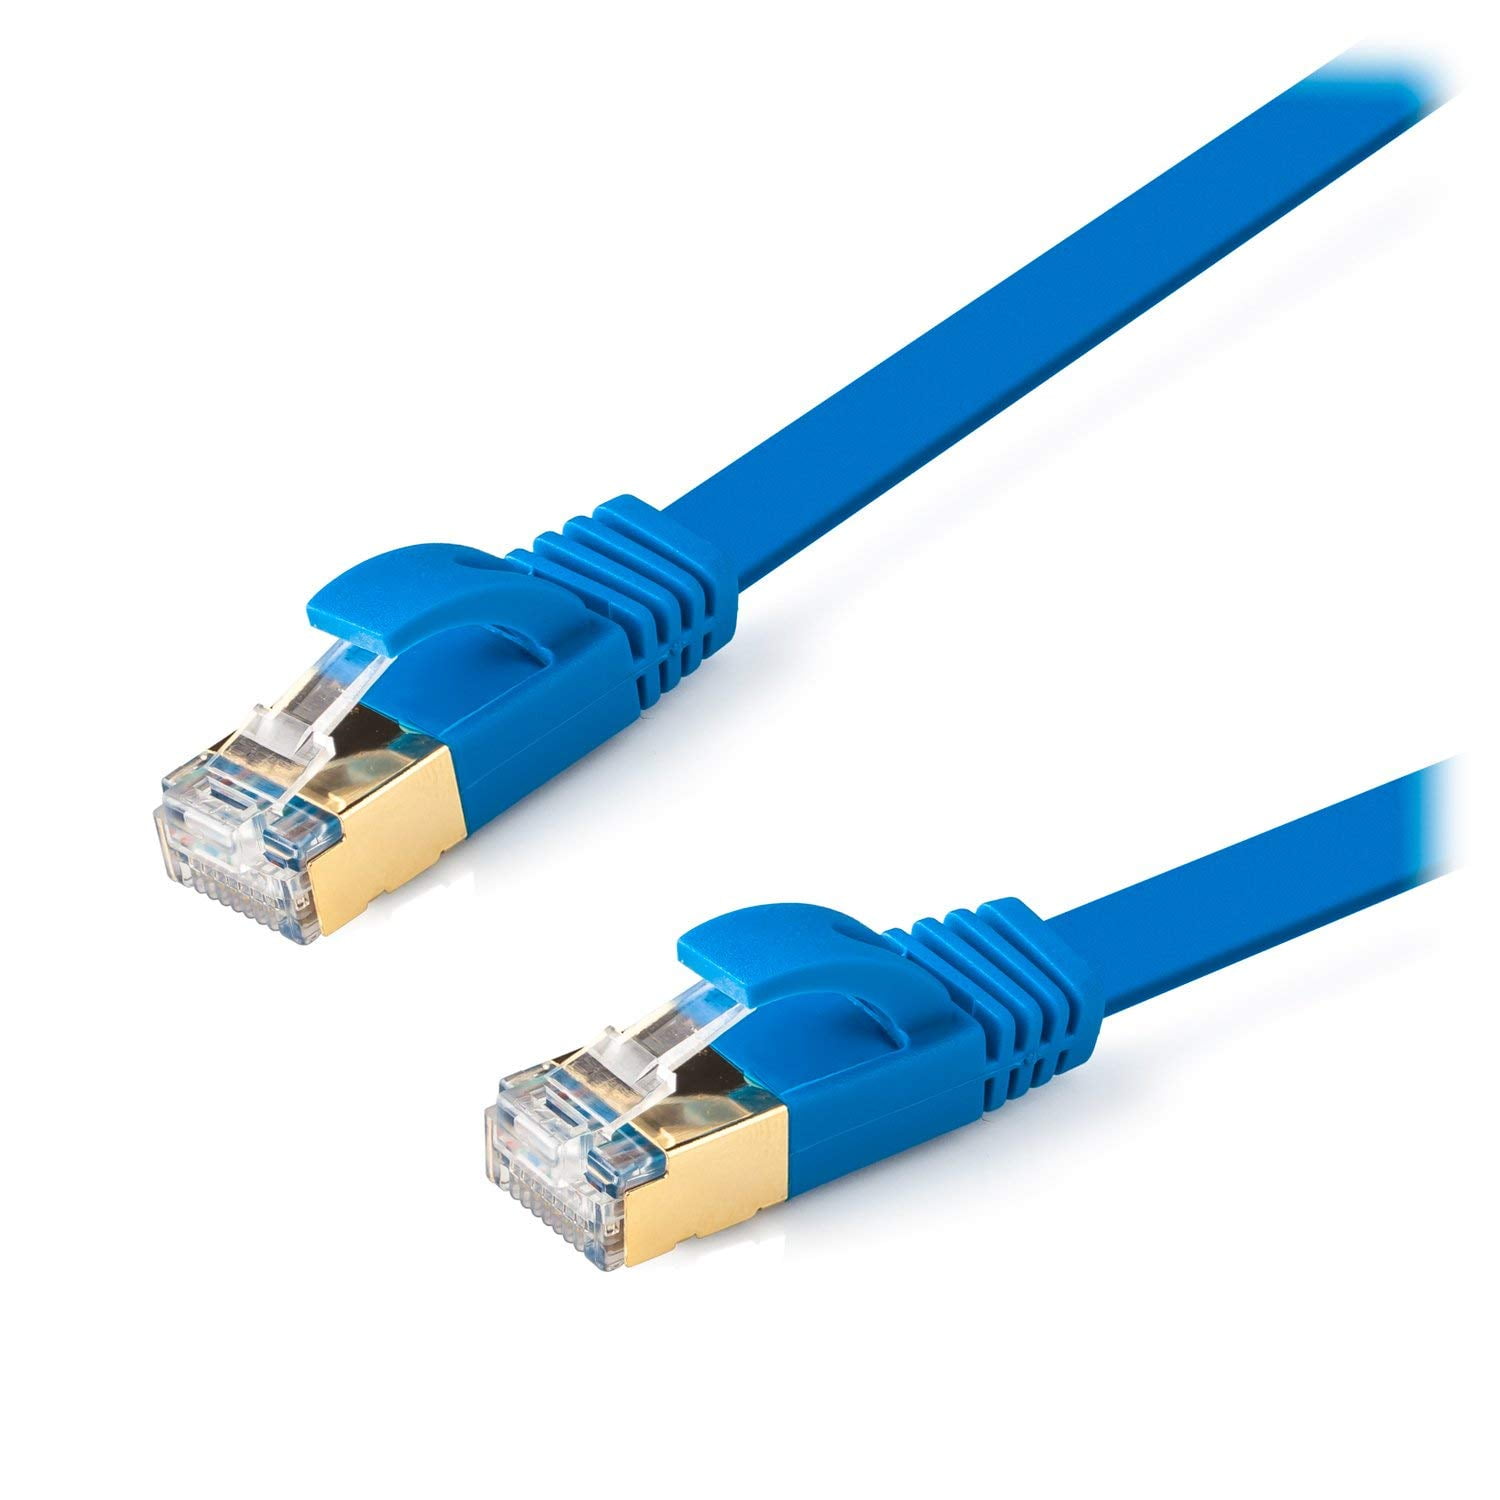 BLUE Network Cable RJ45 LAN Patch Lead Cat 5 Ethernet Internet Router Modem Lot 